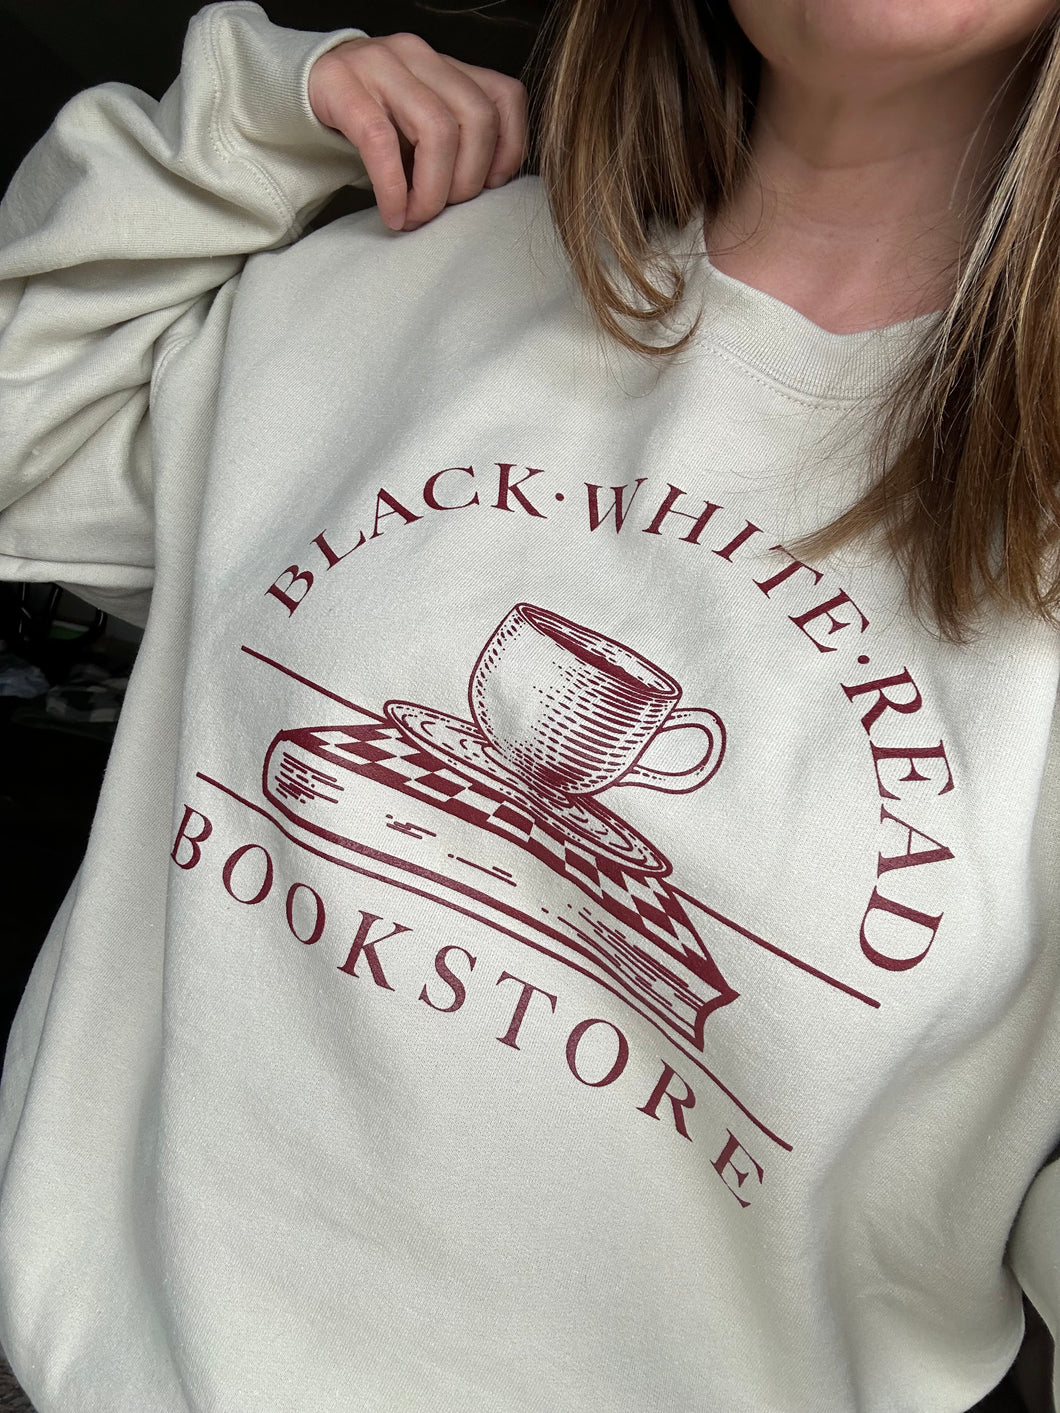 Black, White, & Read Bookstore